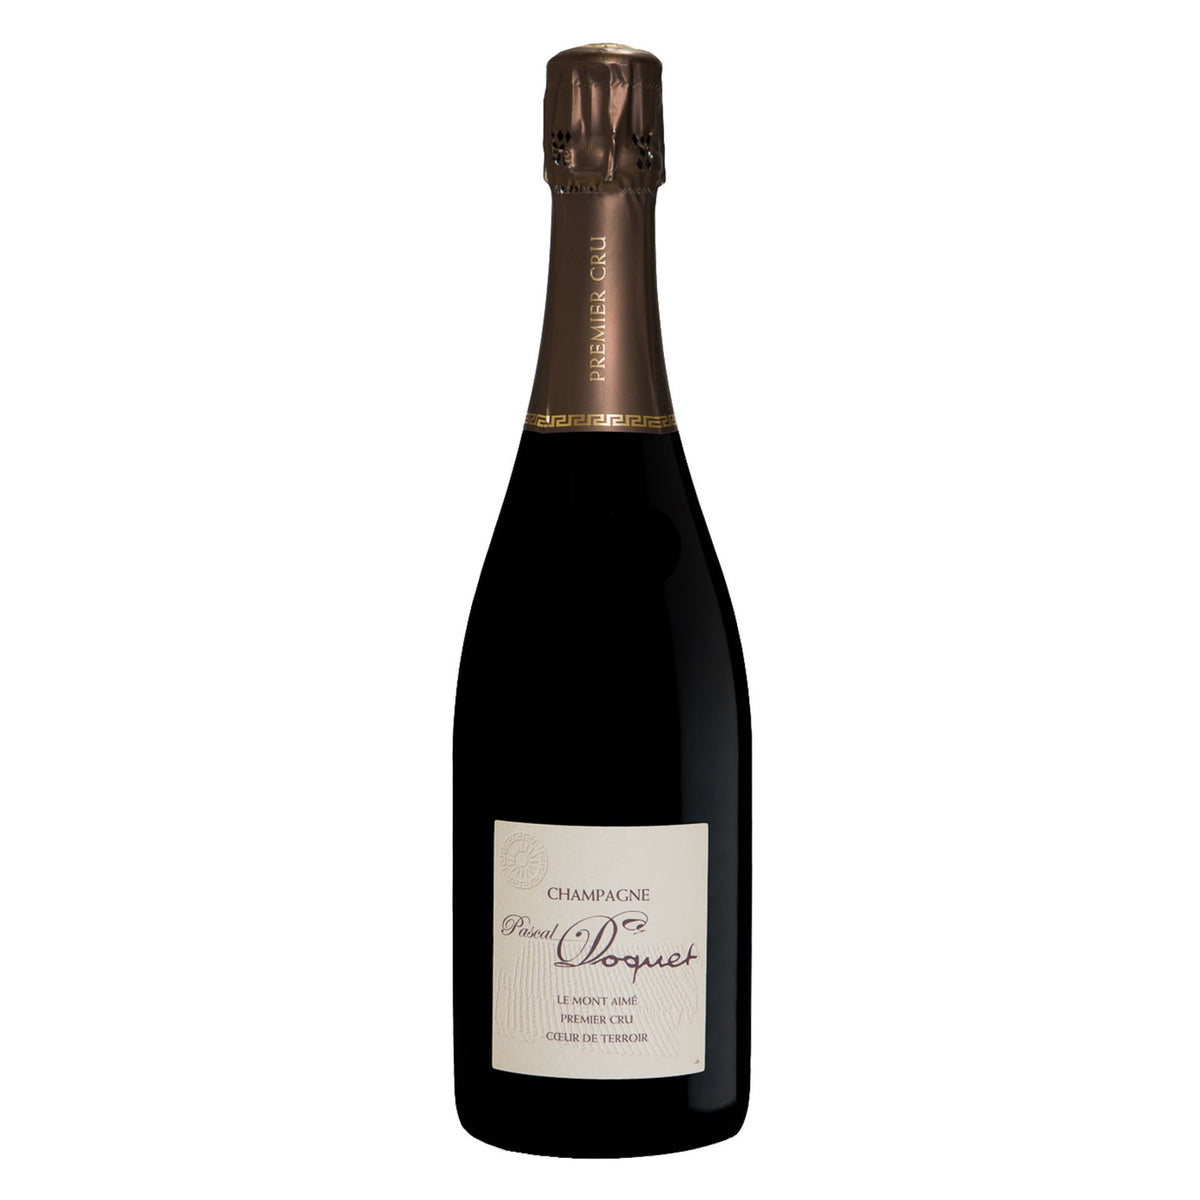 PASCAL DOQUET Champagne 1er Cru Brut &quot;Le Mont Aime&quot; 2009